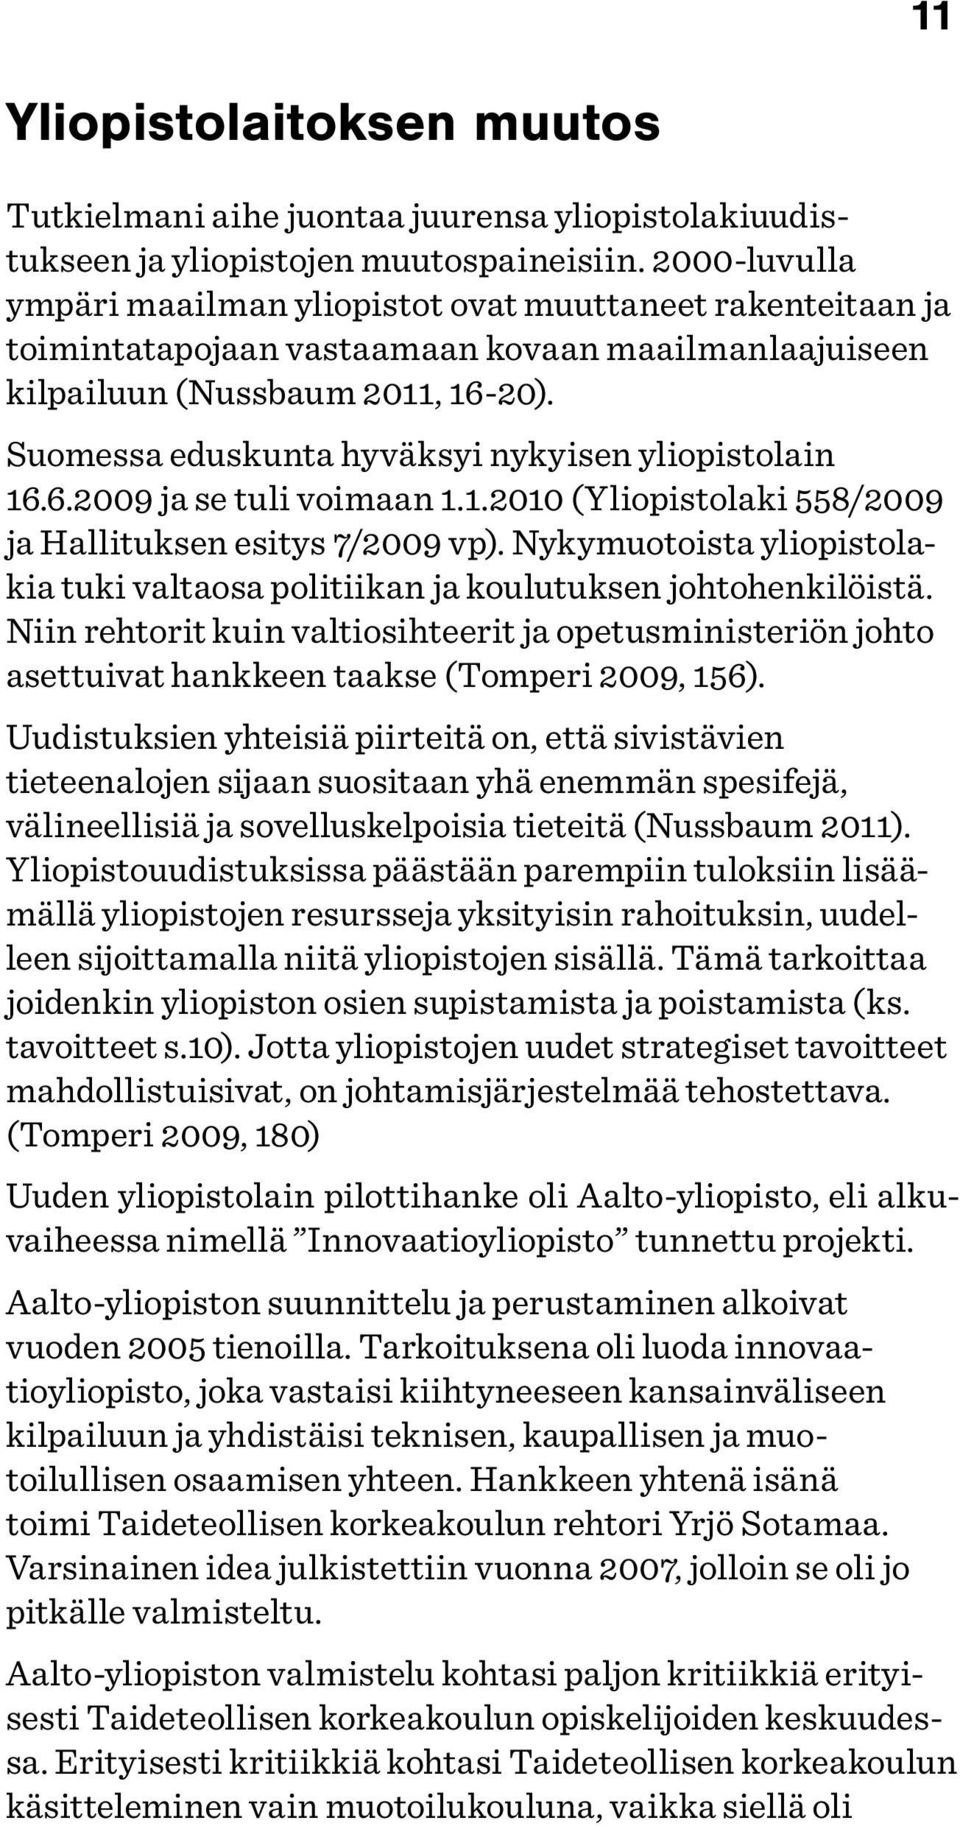 Suomessa eduskunta hyväksyi nykyisen yliopistolain 16.6.2009 ja se tuli voimaan 1.1.2010 (Yliopistolaki 558/2009 ja Hallituksen esitys 7/2009 vp).